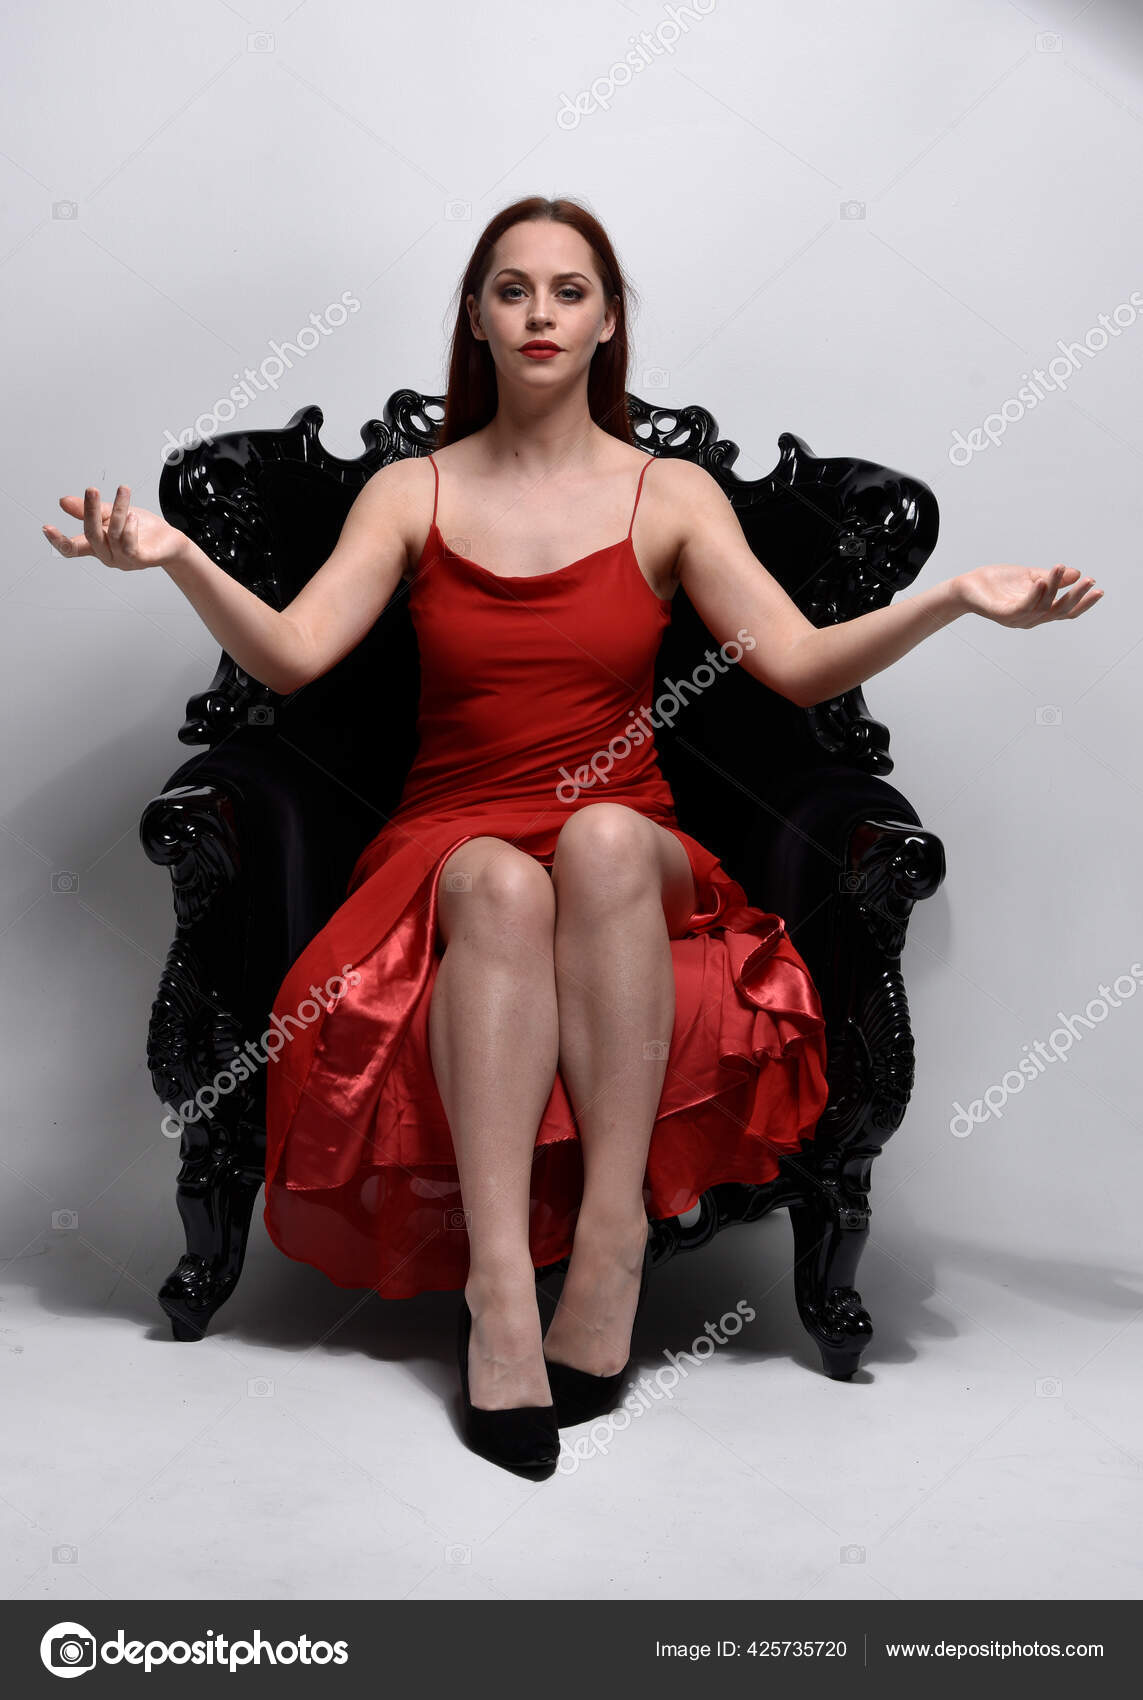 Julia Roberts Pretty Woman Red Dress